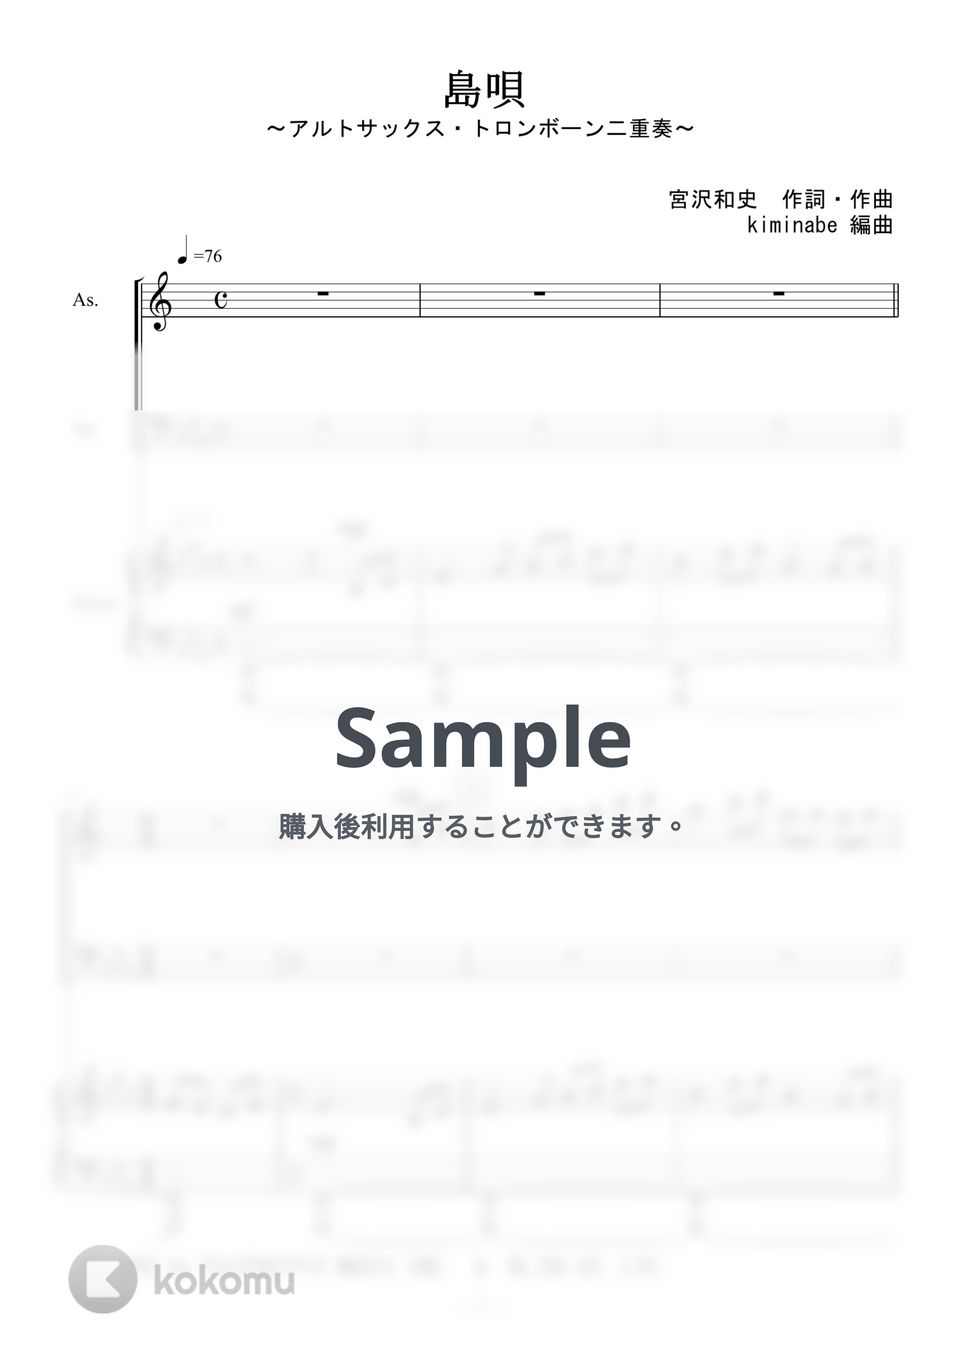 宮沢和史 - 島唄 (アルトサックス・トロンボーン二重奏) by kiminabe